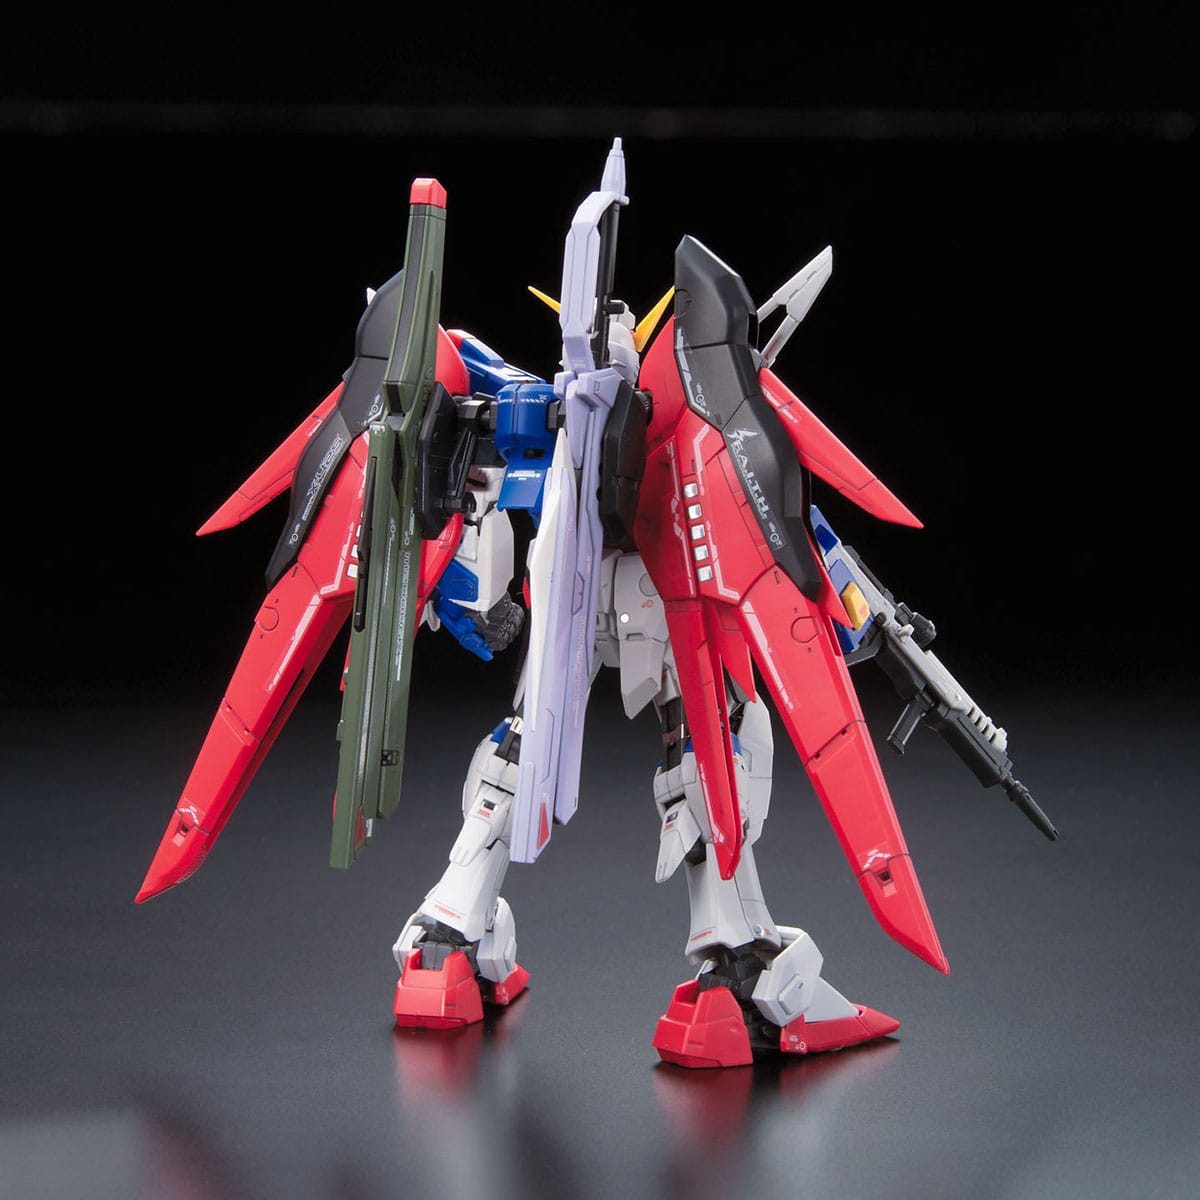 RG 1/144 Destiny Gundam - Bandai - Glacier Hobbies